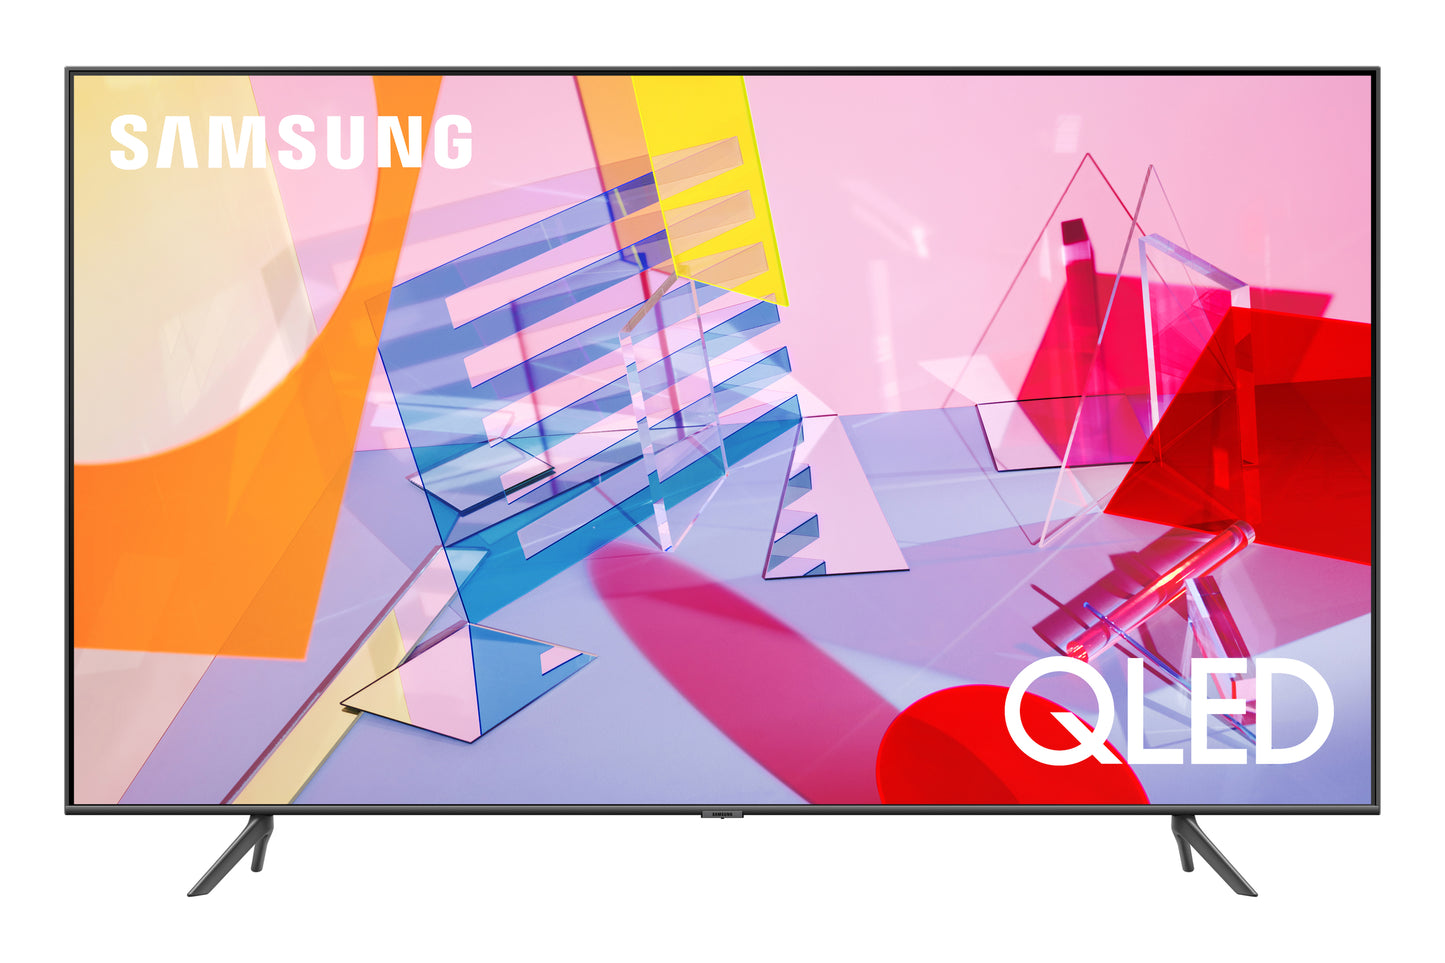 Samsung 85-in Q60T QLED 4K UHD HDR Smart TV QN85Q60TAFXZA (2020)